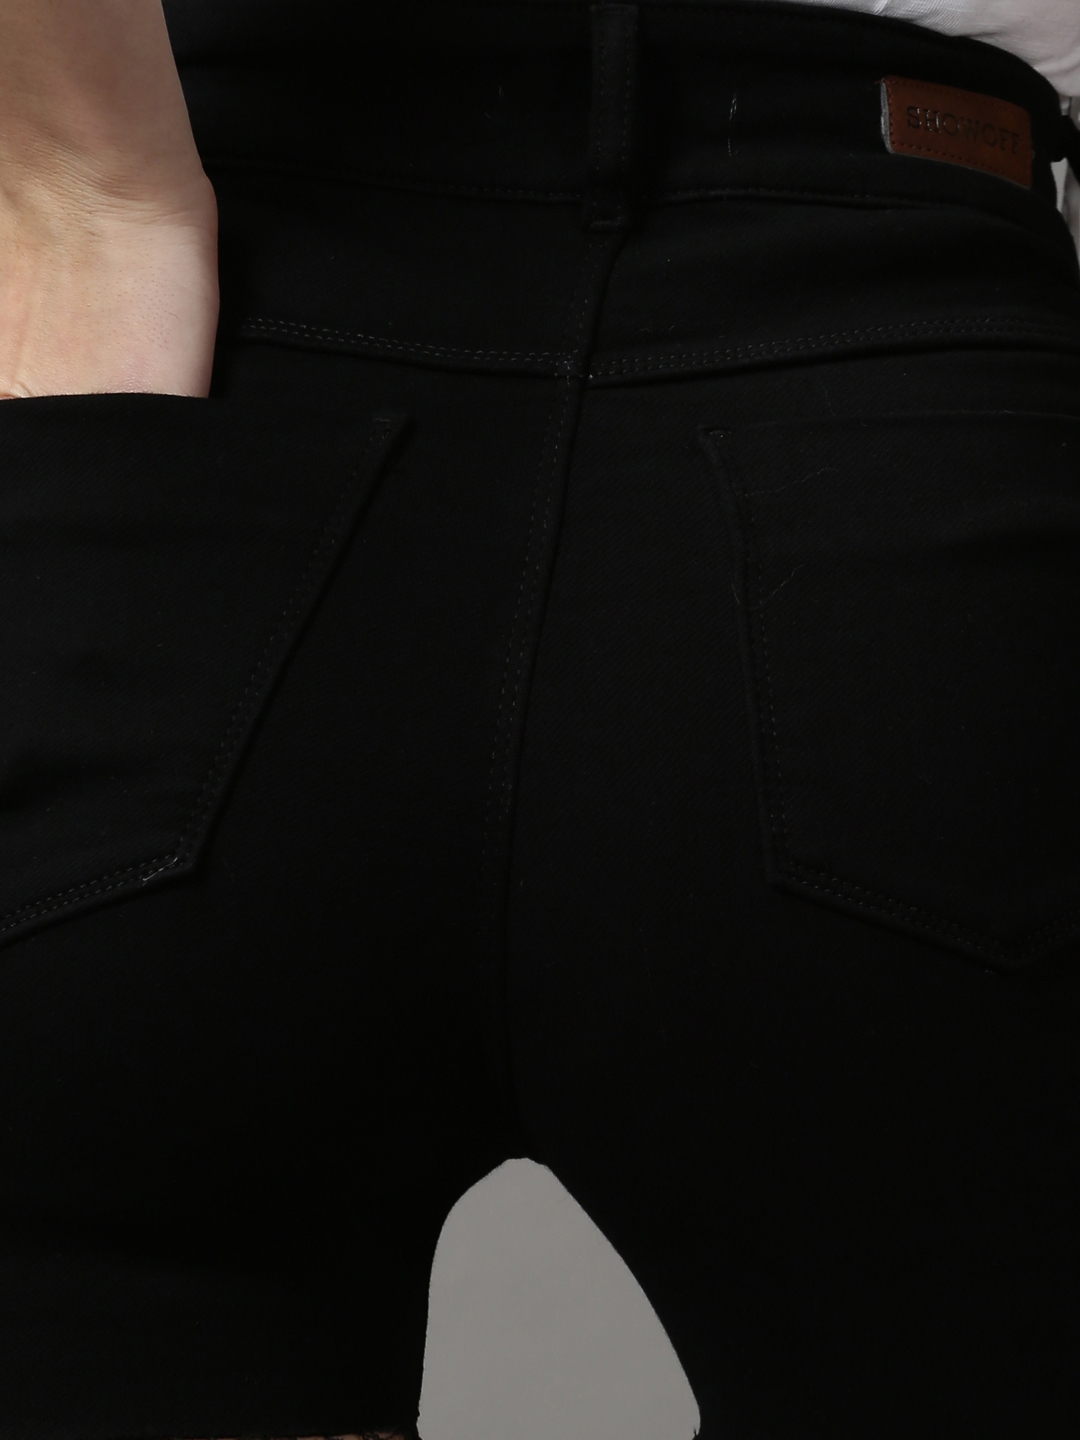 Buy Fasnoya Women Blended Hot Pants  Black Online at Low Prices in India   Paytmmallcom